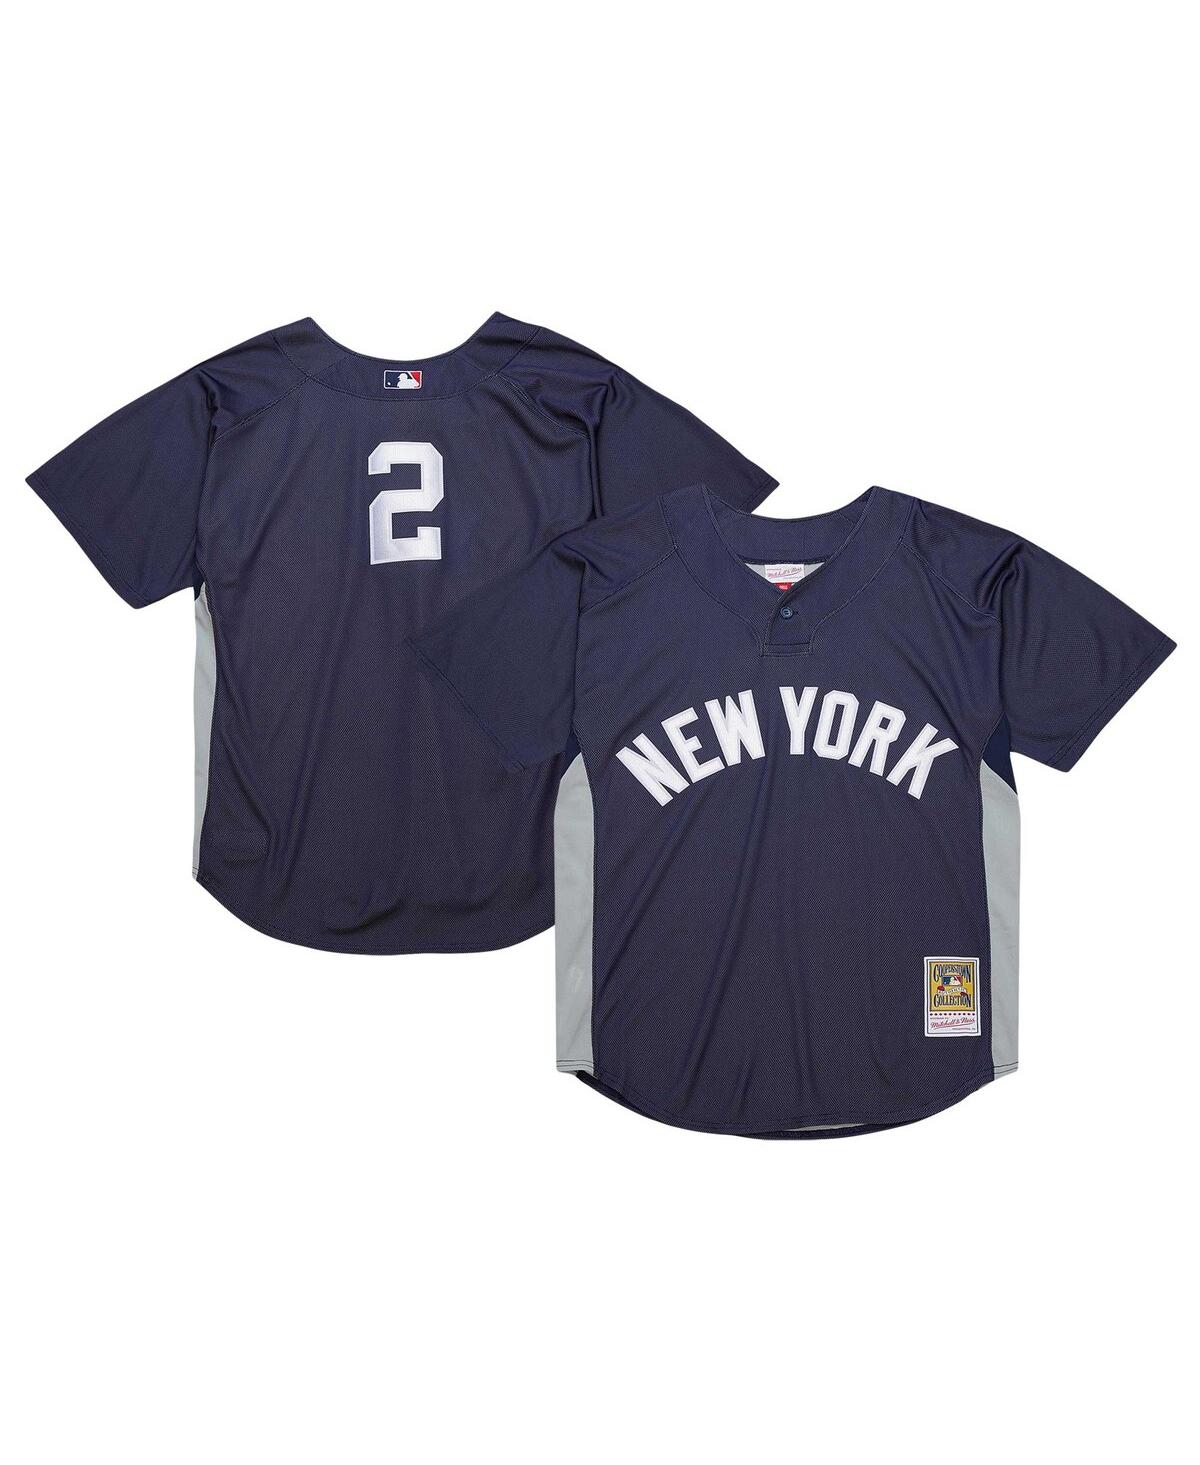 Men's Derek Jeter Navy New York Yankees Cooperstown Collection Batting Practice Jersey - Navy